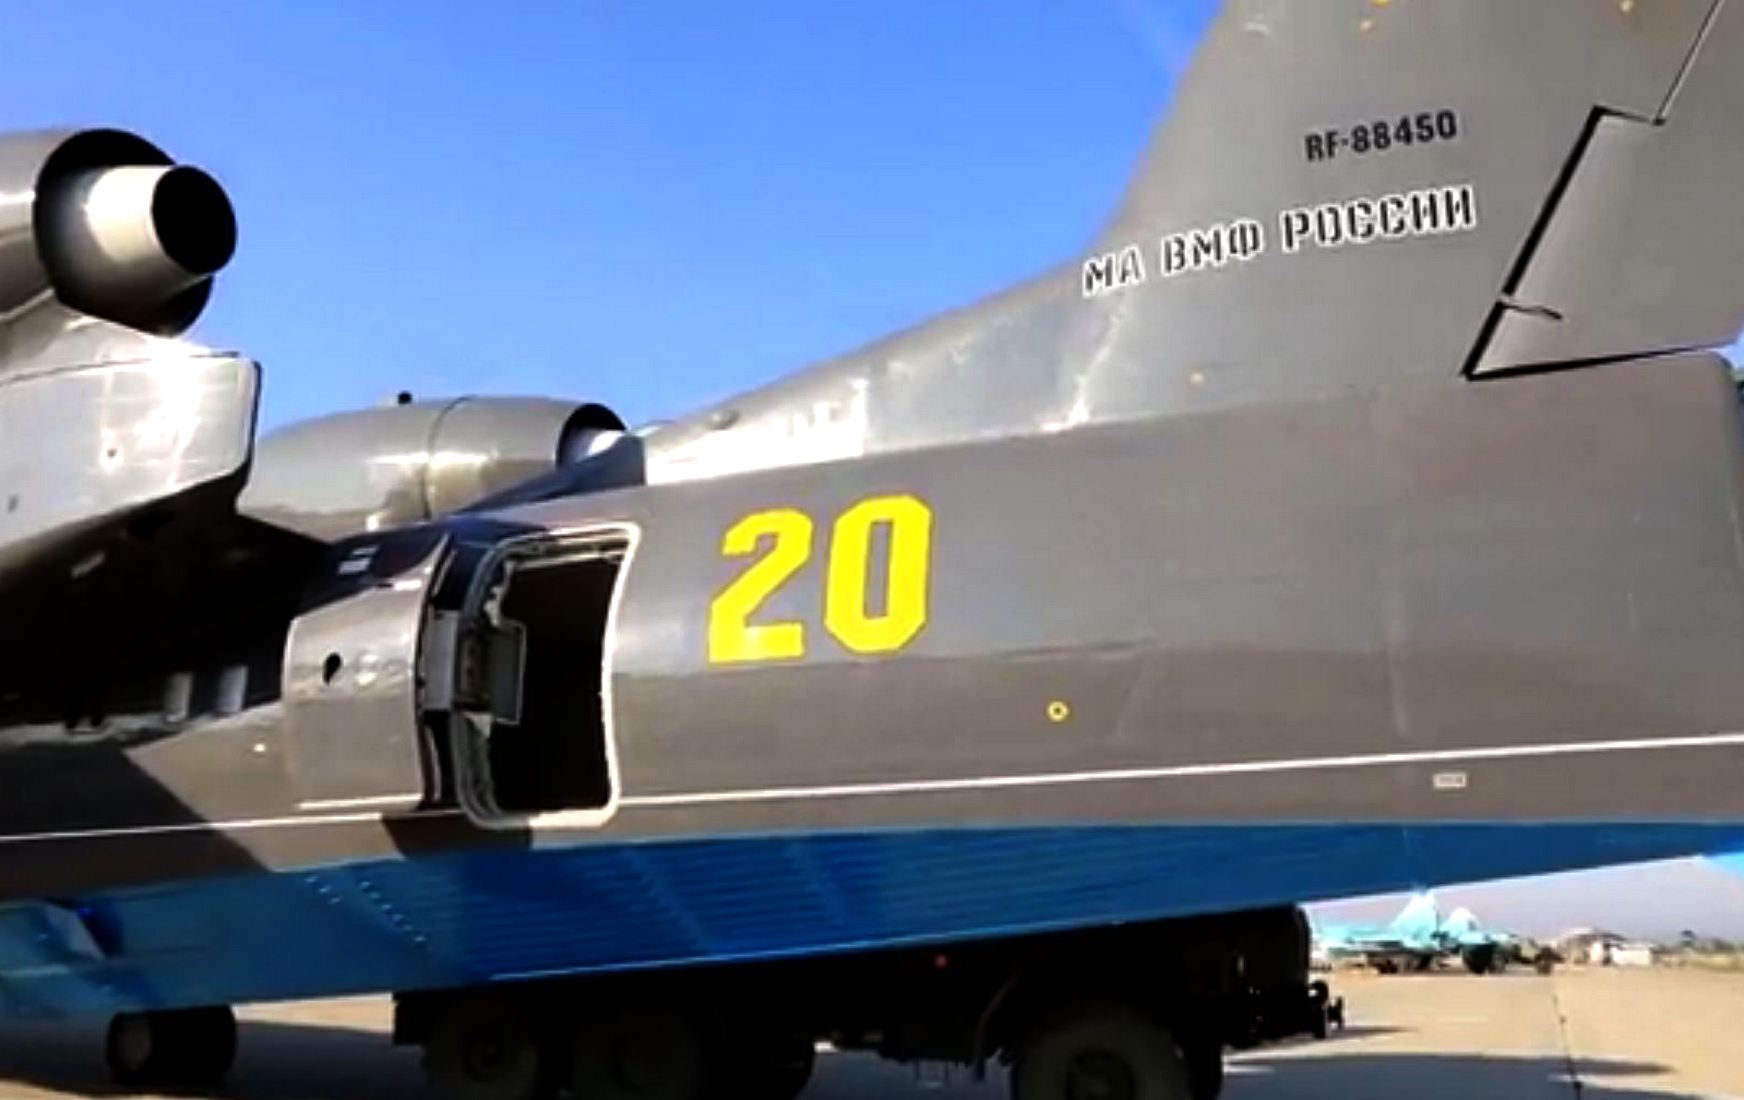 Опубликованы кадры с разбившимся самолётом Бе-200 перед вылетом в Турцию